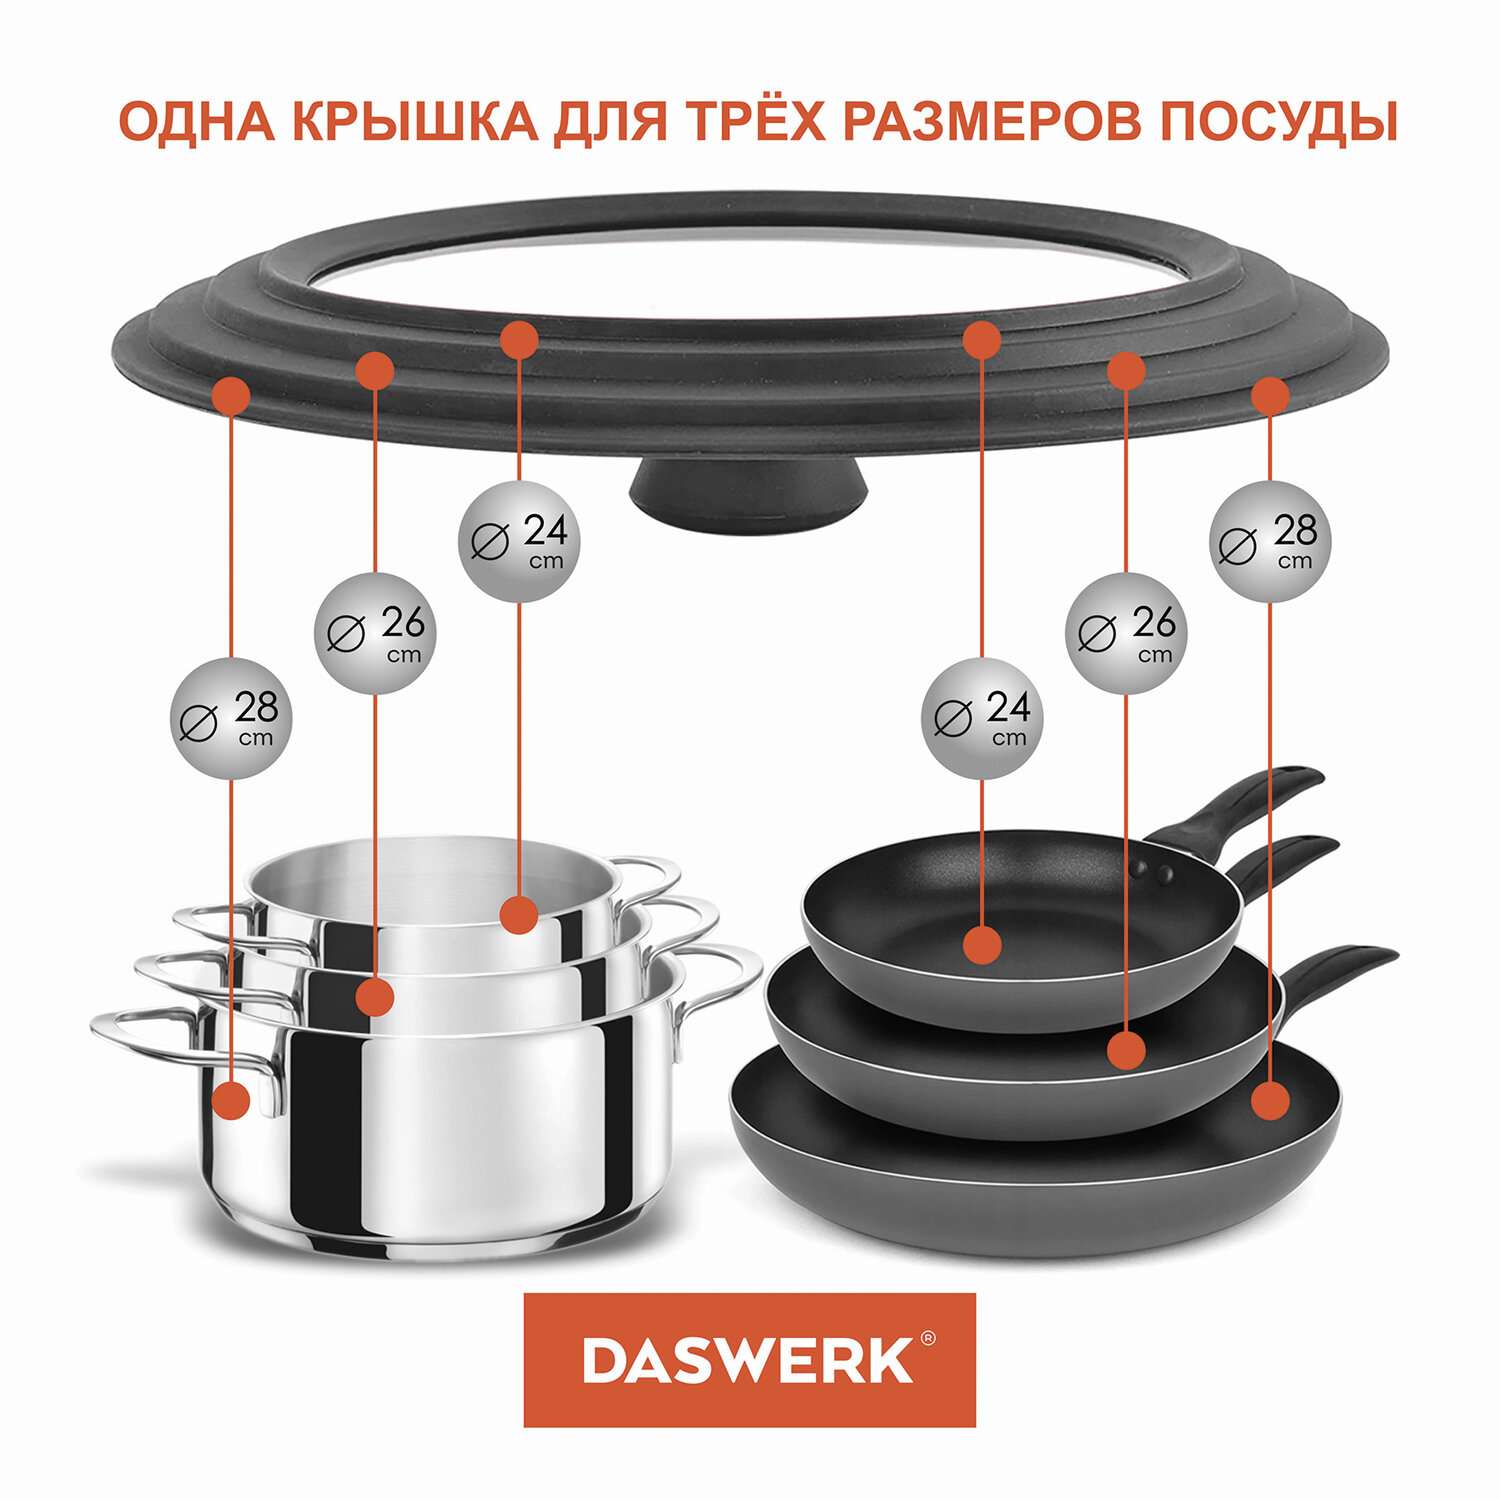 Крышка для сковороды DASWERK кастрюли посуды универсальная 3 размера 24-26-28см - фото 5